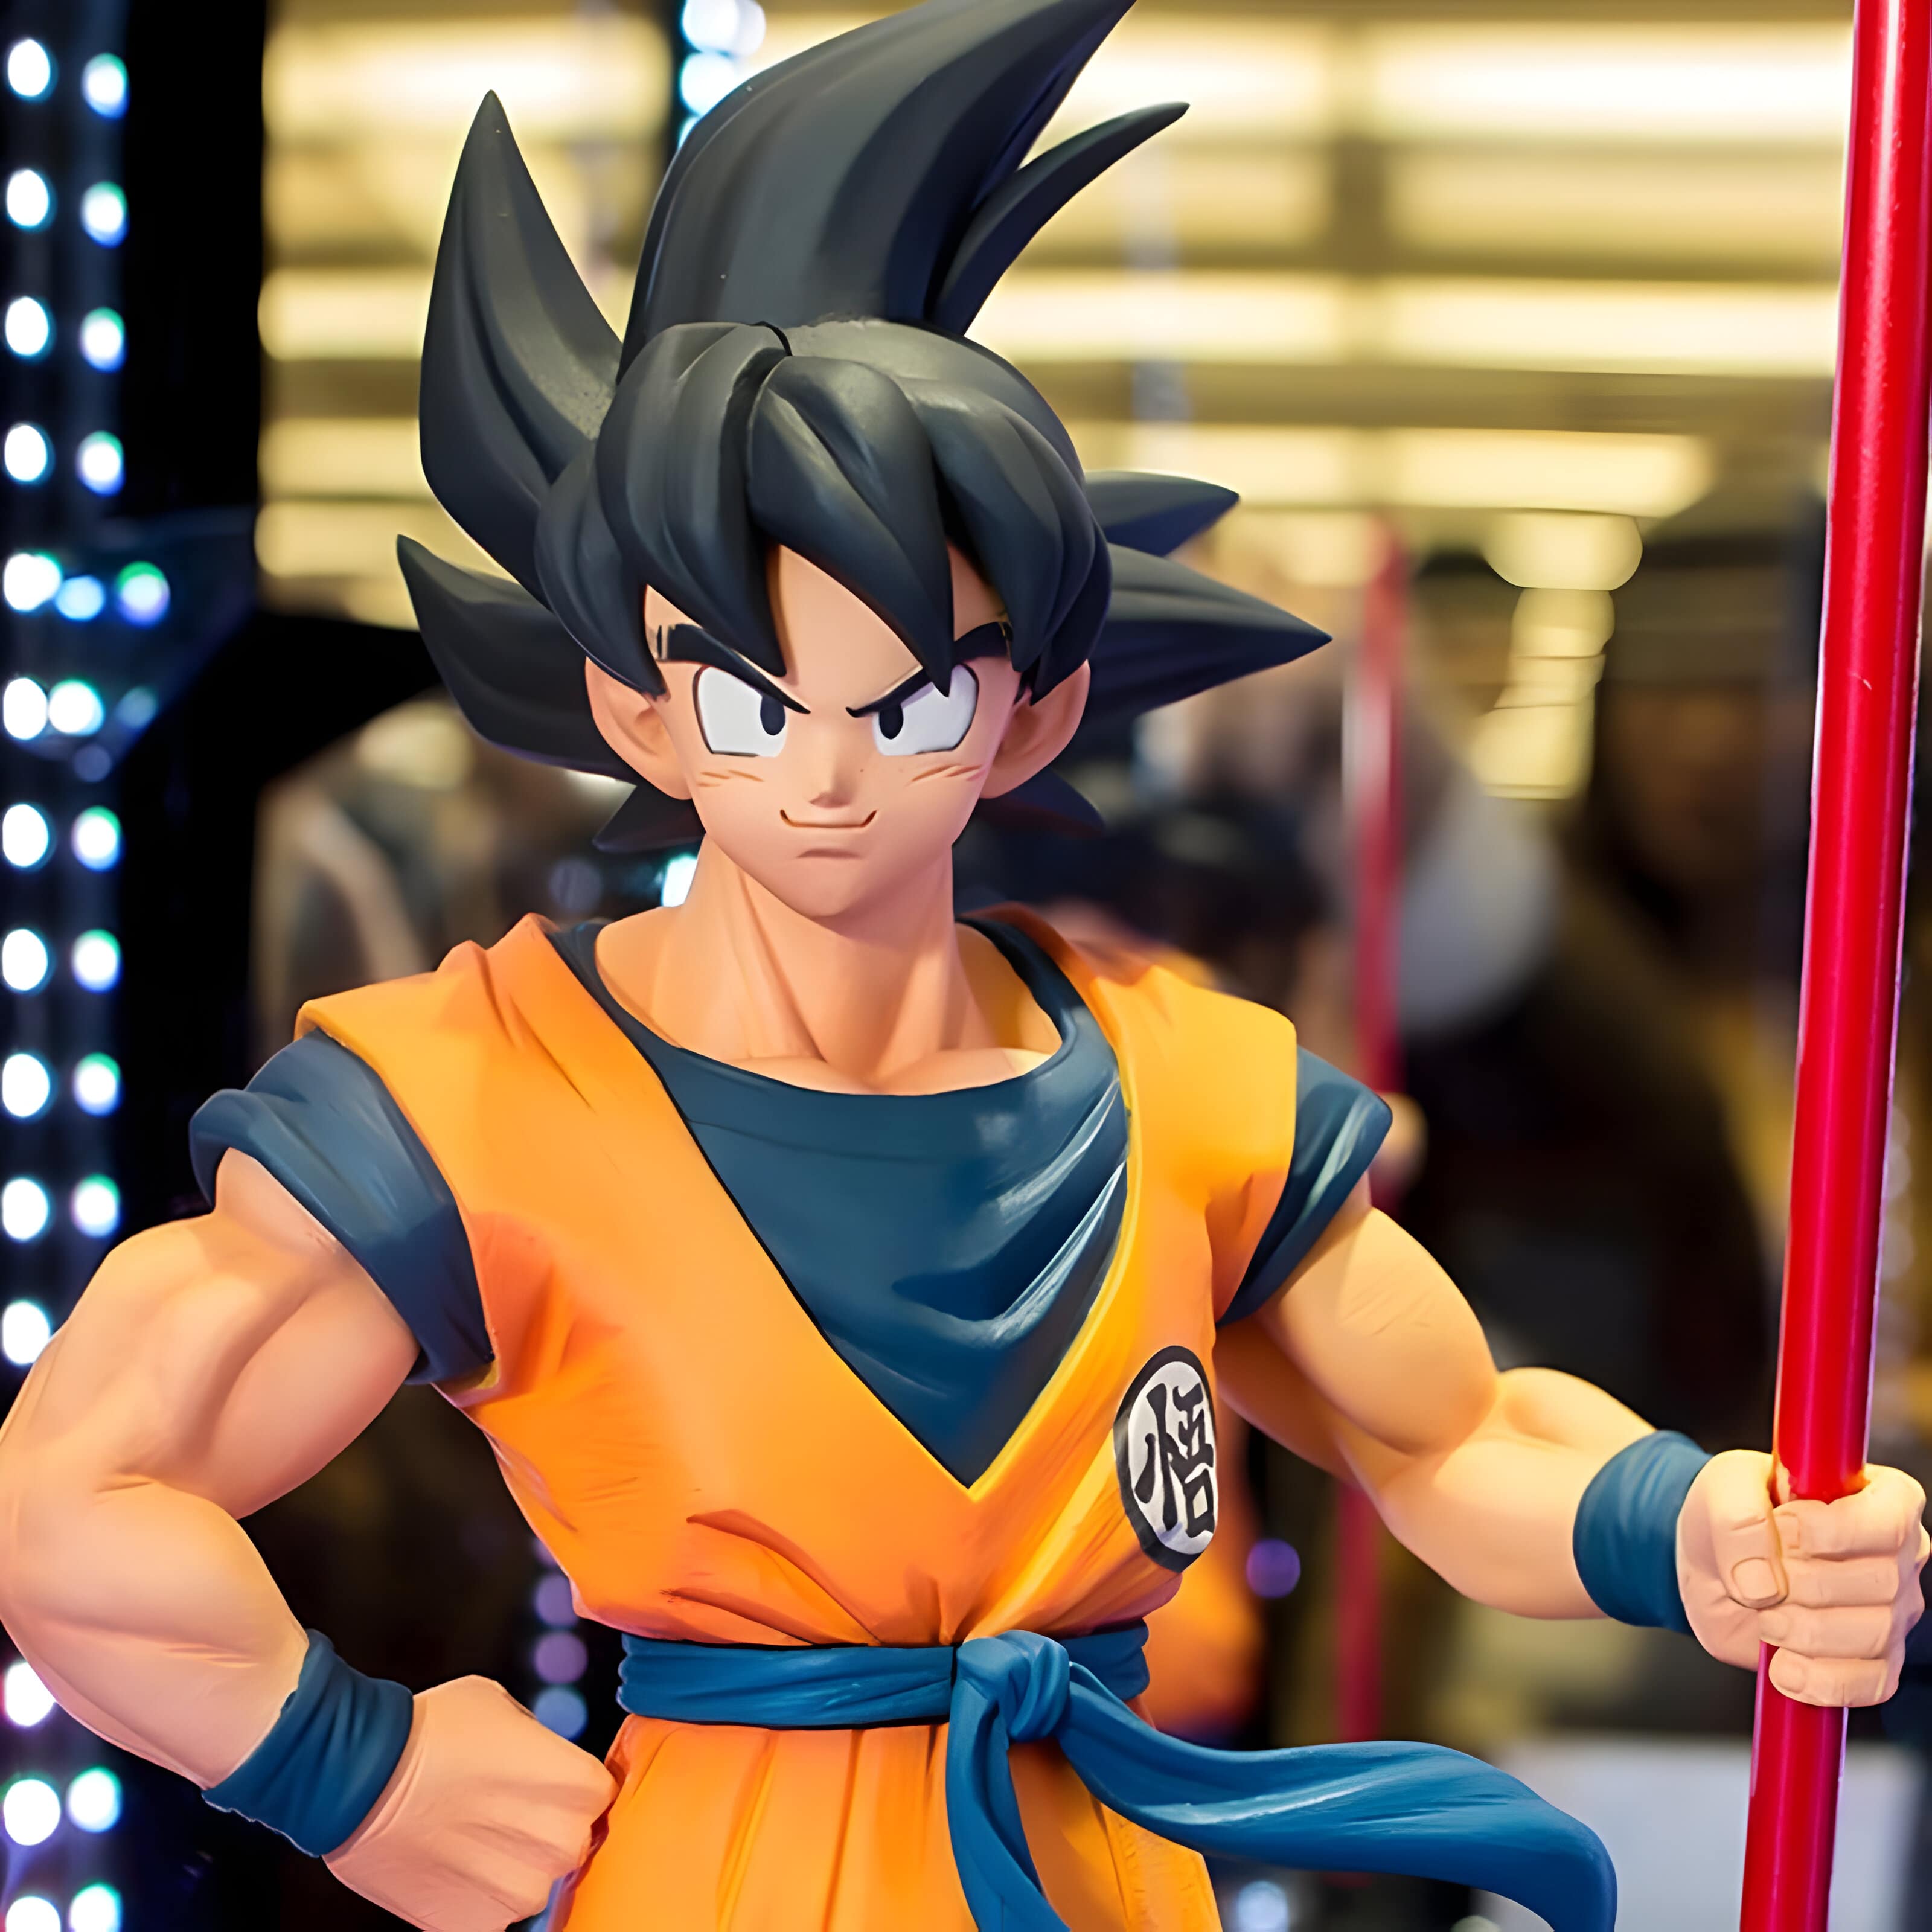 Figurine Dragon Ball Z Goku - DBZ